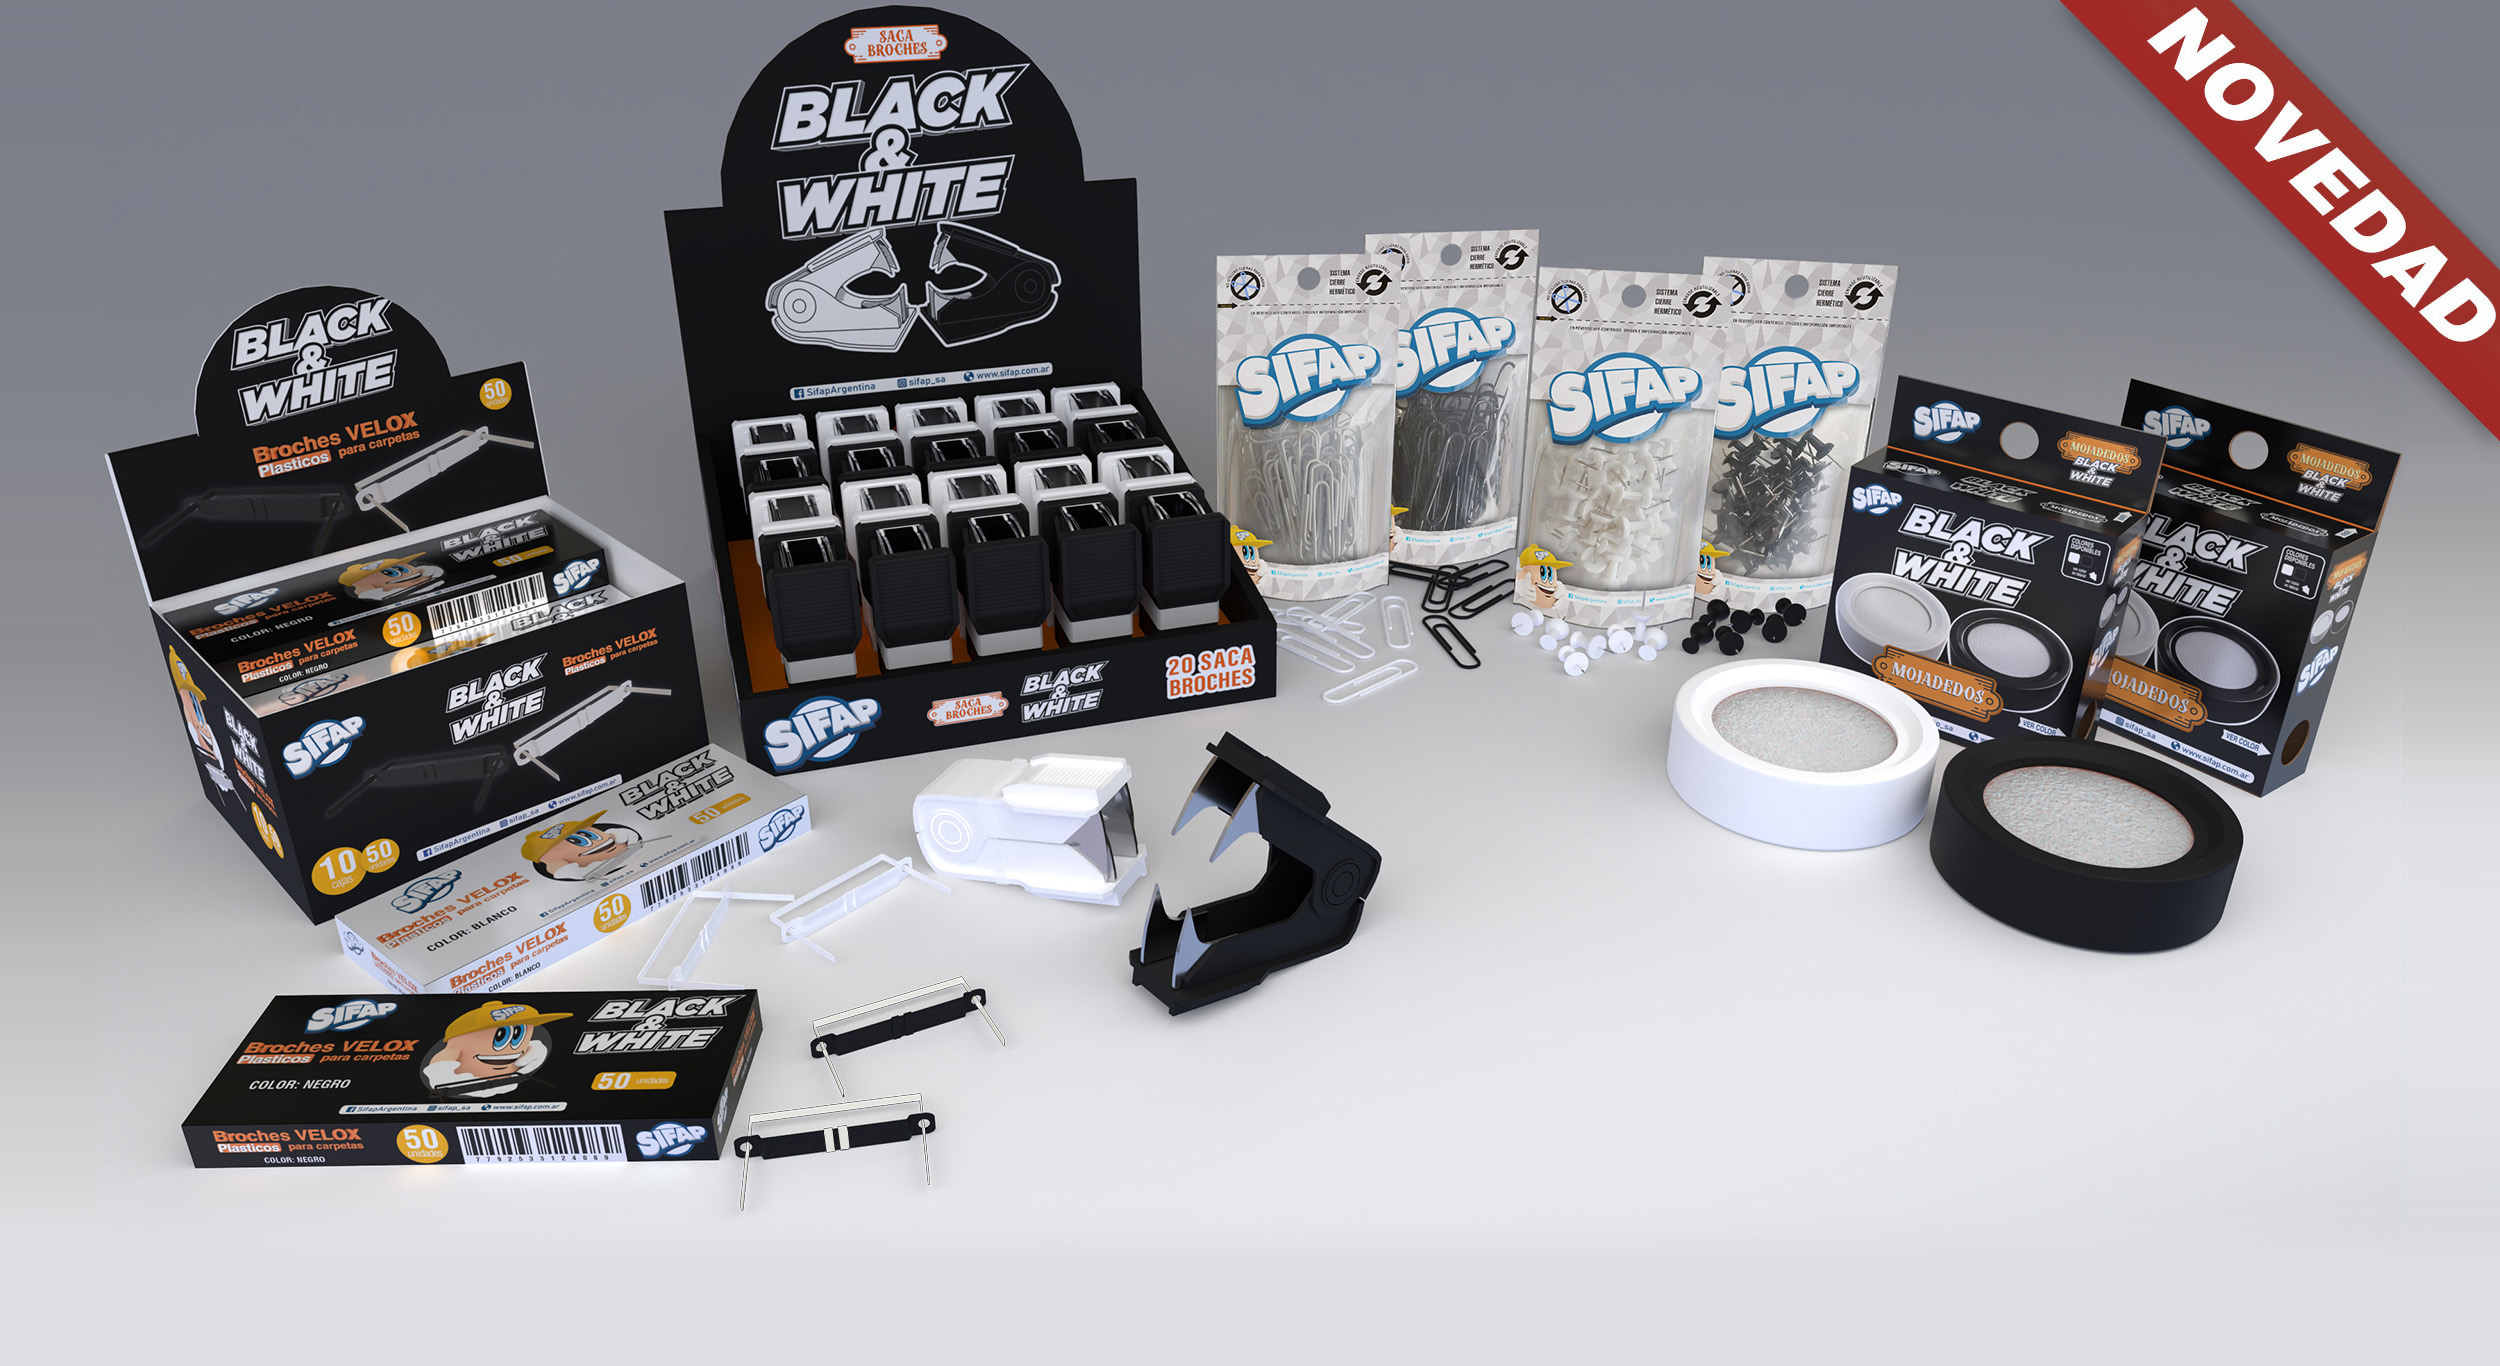 Black & White - Nuevos productos full Blanco y Negro